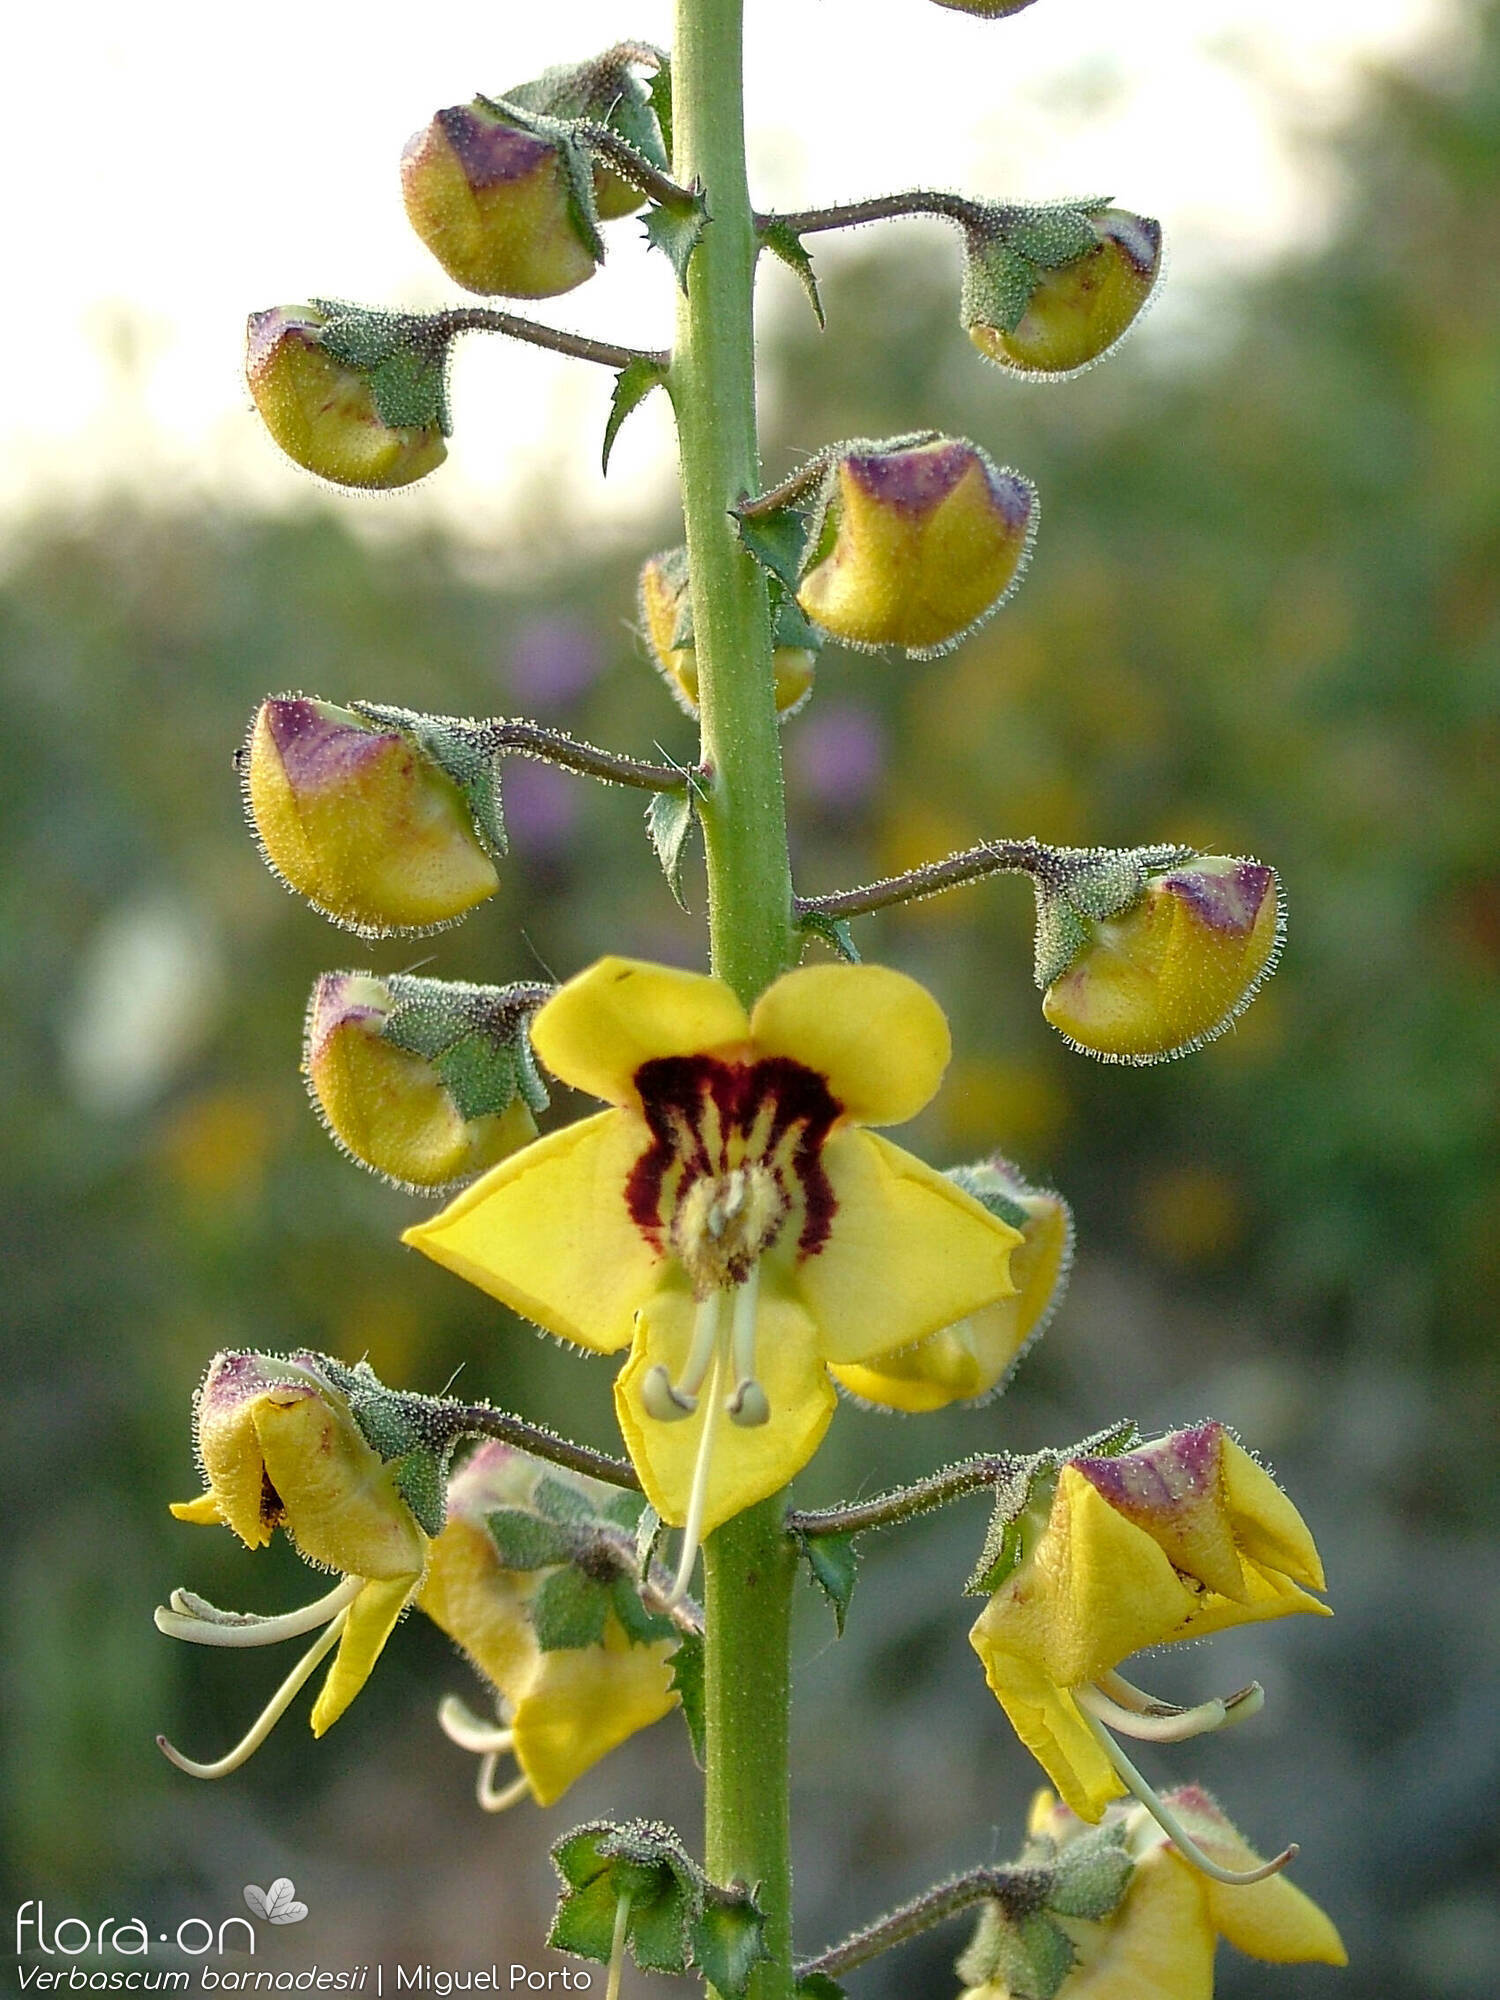 Verbascum barnadesii - Flor (geral) | Miguel Porto; CC BY-NC 4.0